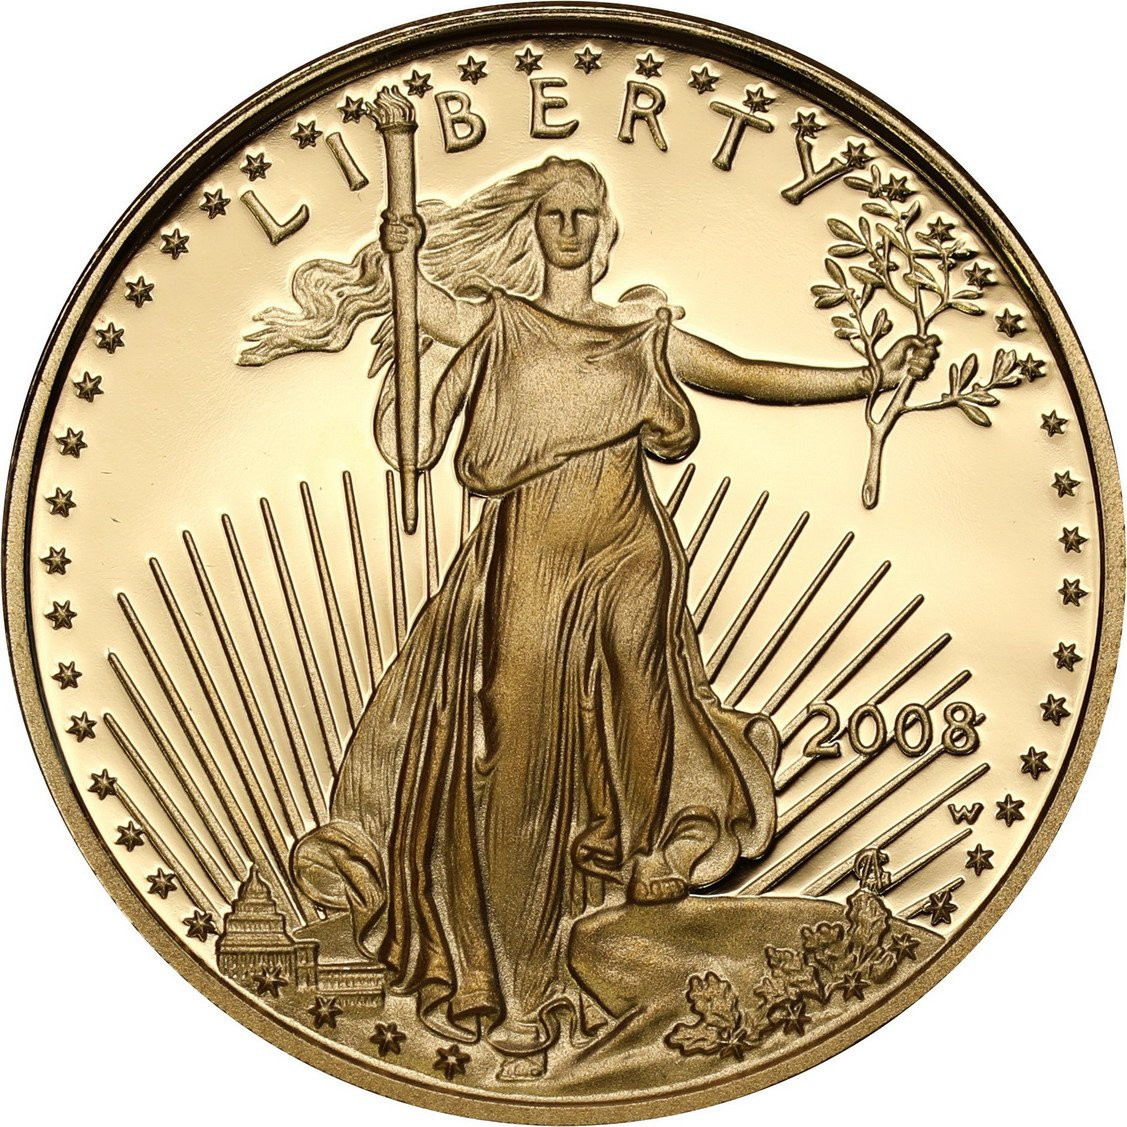 USA. Złote 5 $ dolarów 2008 Orzeł (Eagle) - LUSTRZANY – 1/10 uncji złota